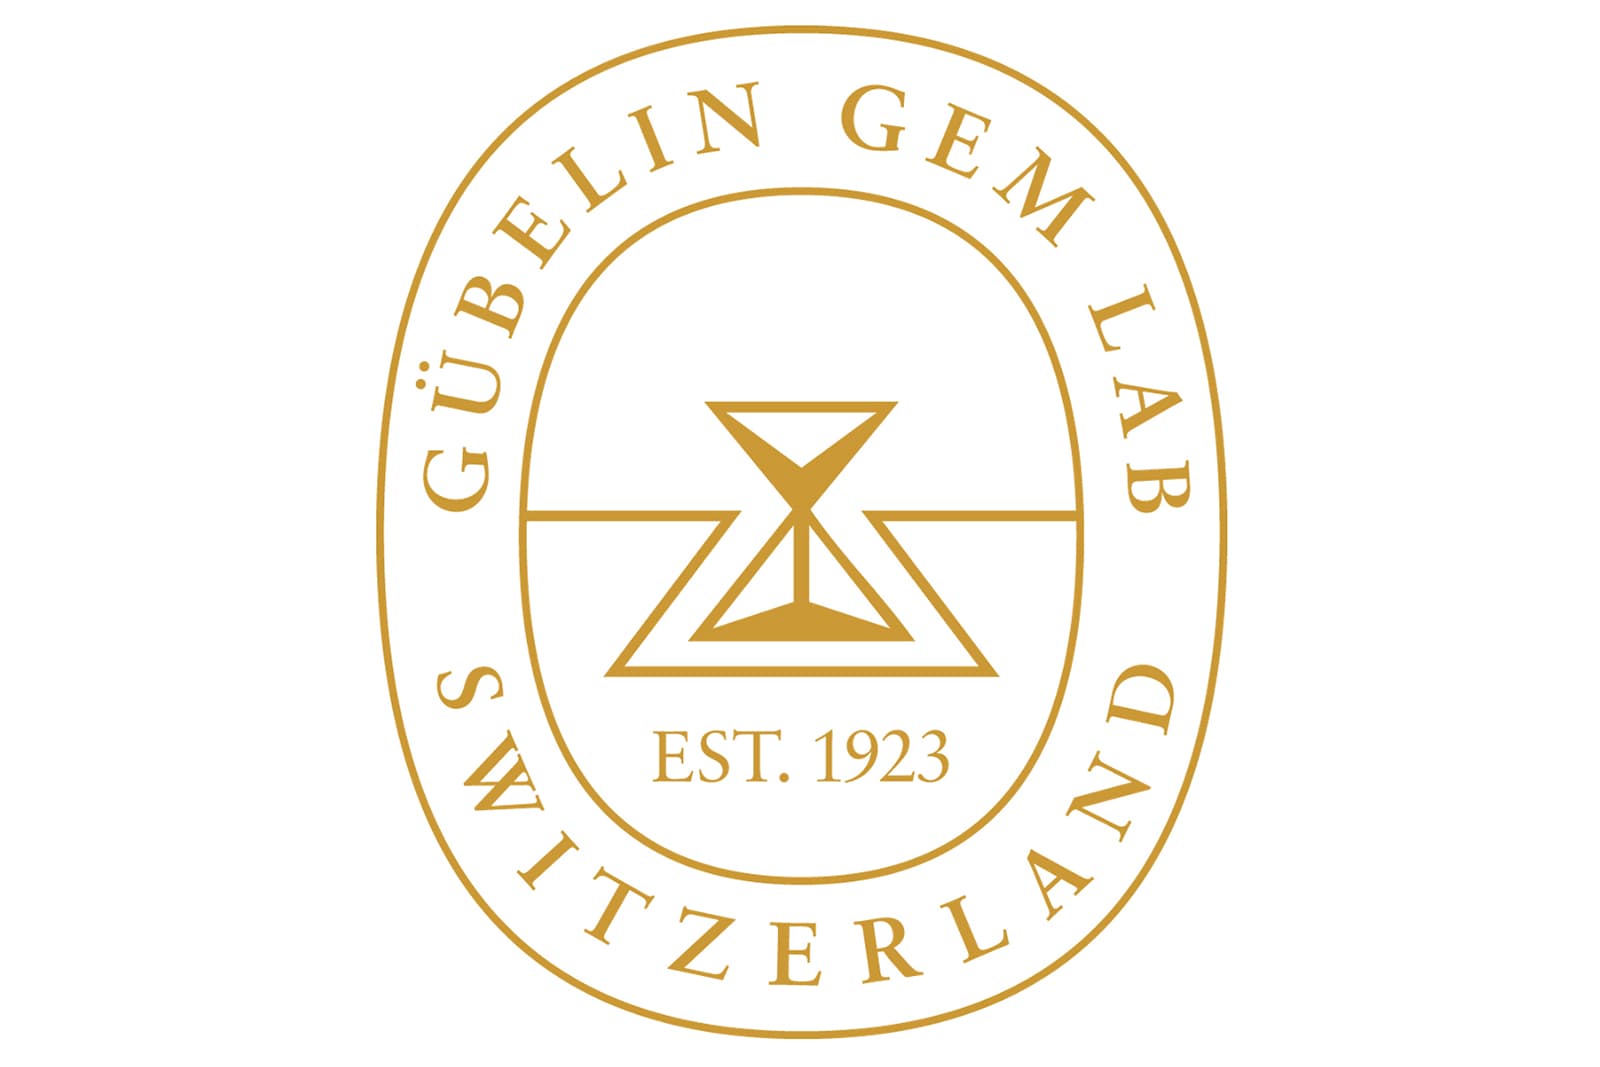 Двоюродный дед Рафаэля Губелина, Эдуард Йозеф Губелин, основал Gübelin Gem Lab в 1923 году